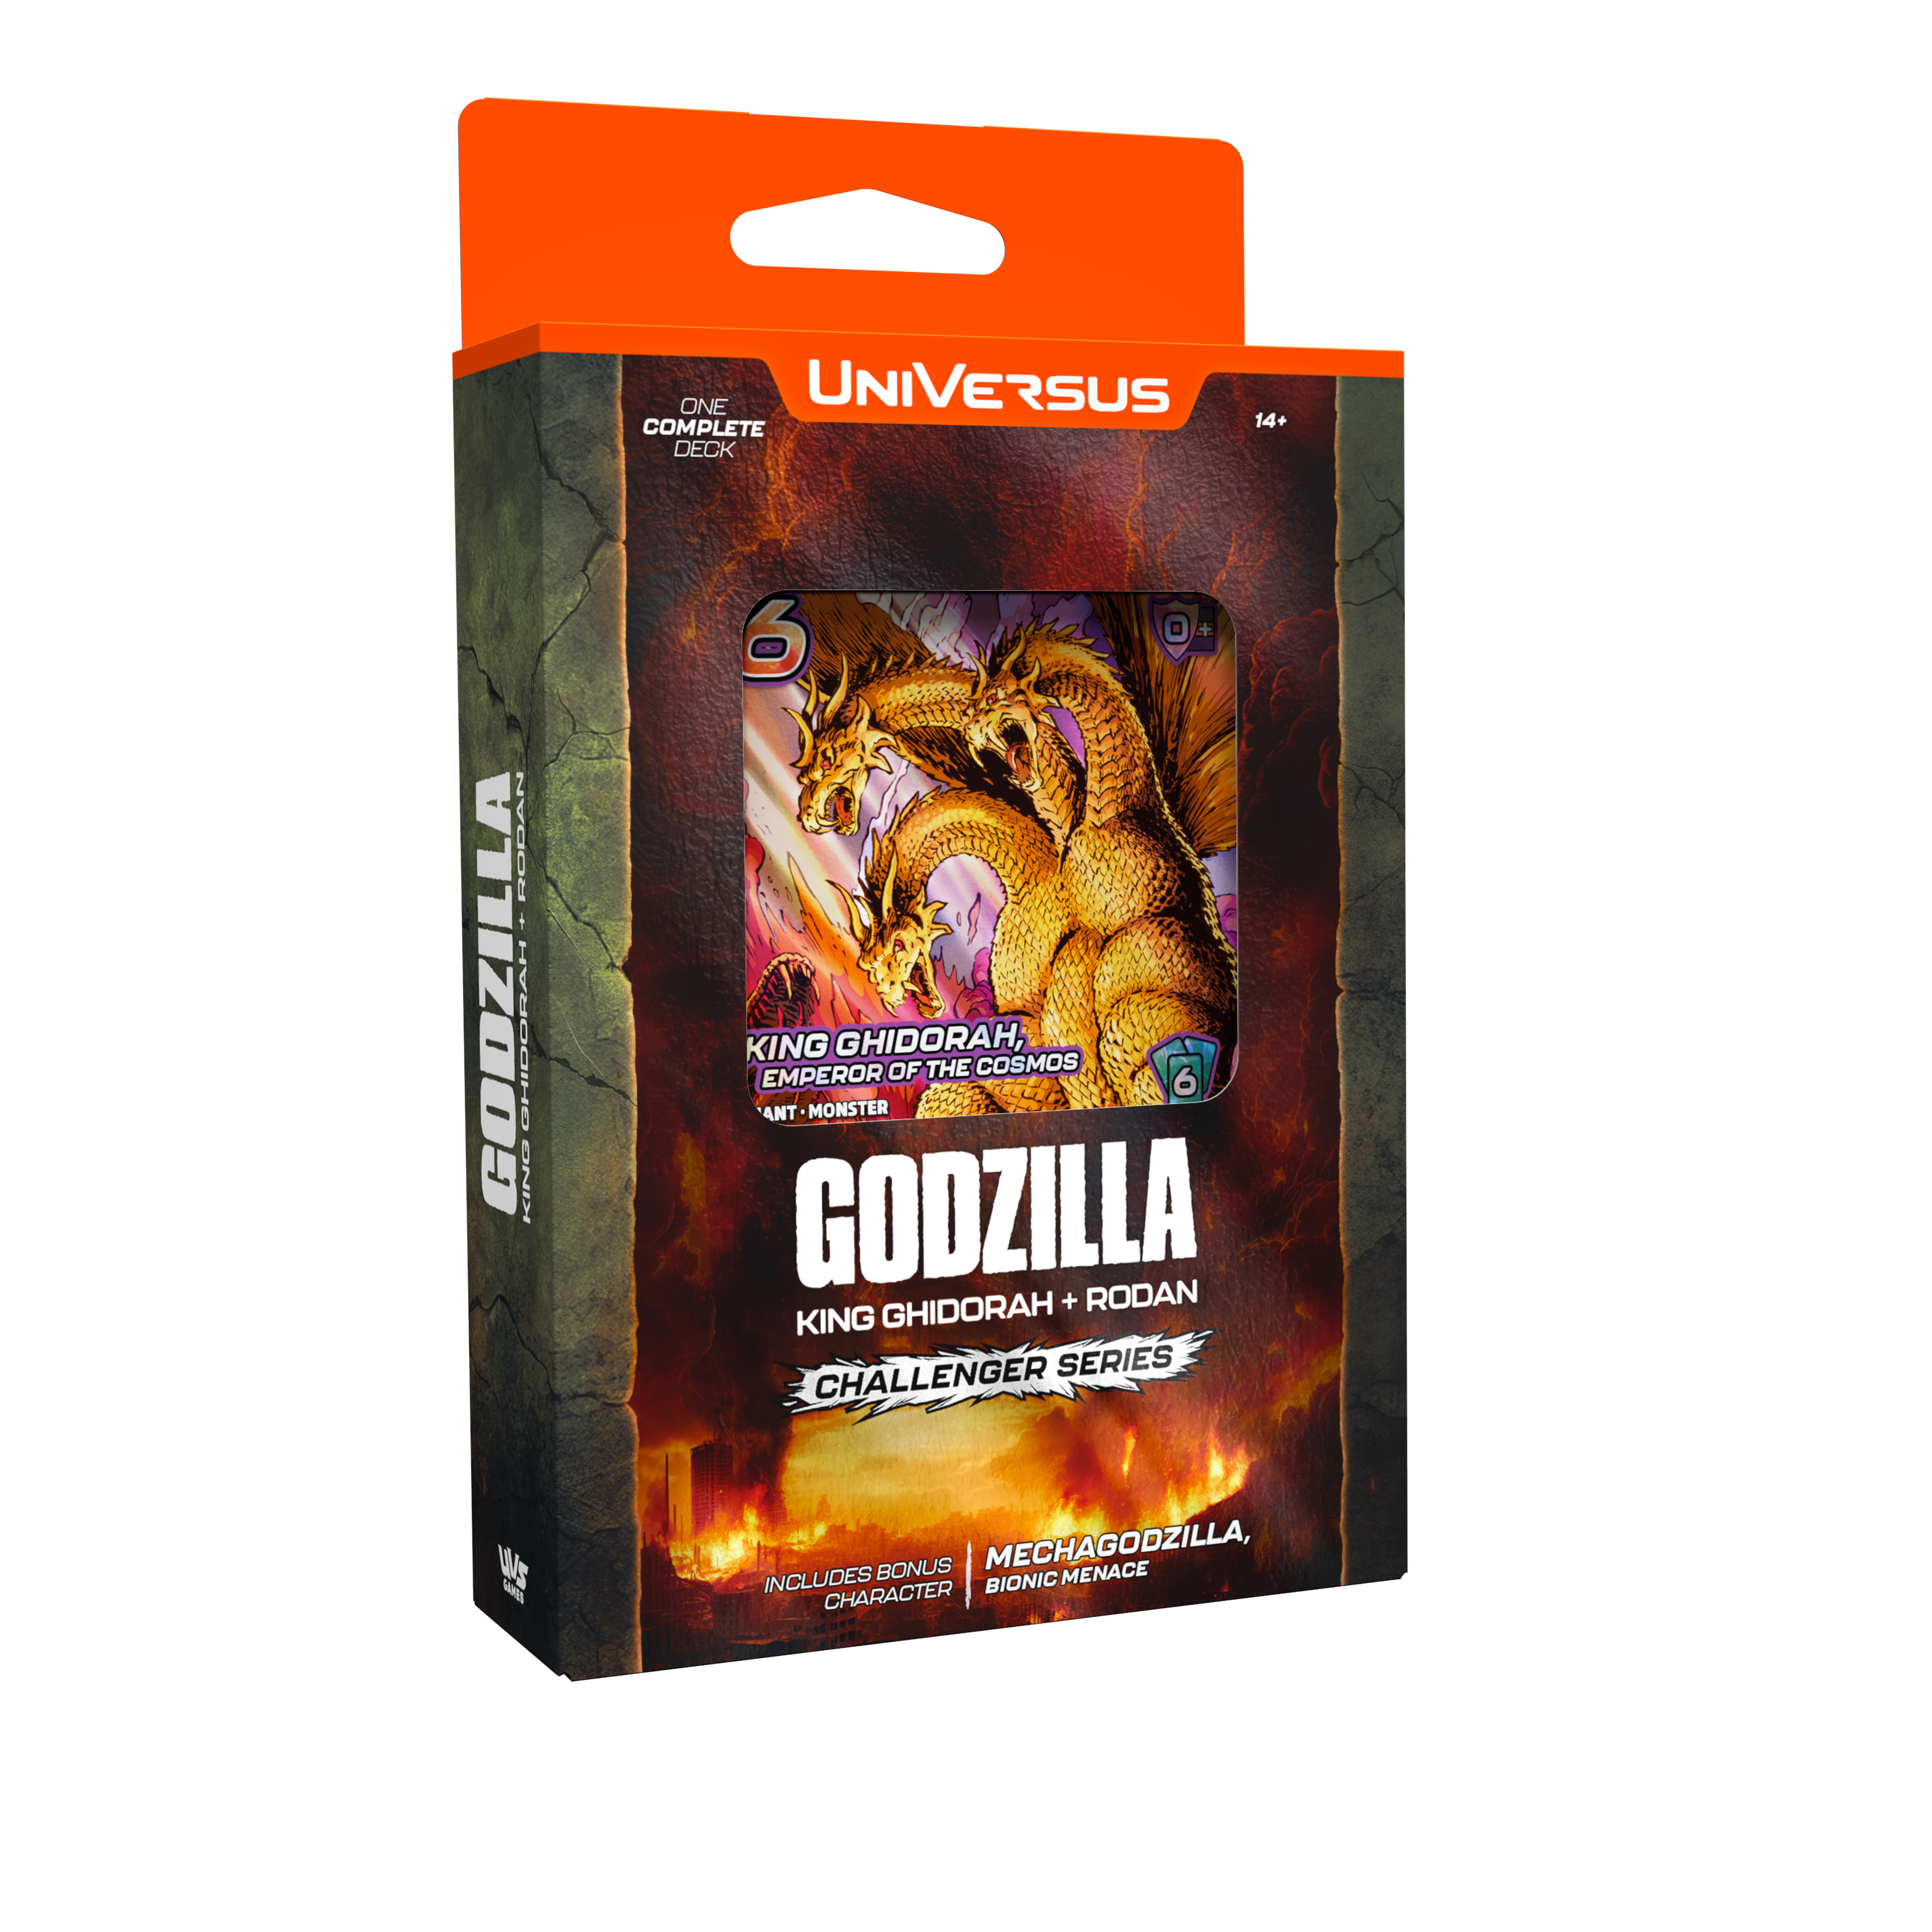 Godzilla-CS-King Ghidorah boxshot anl image